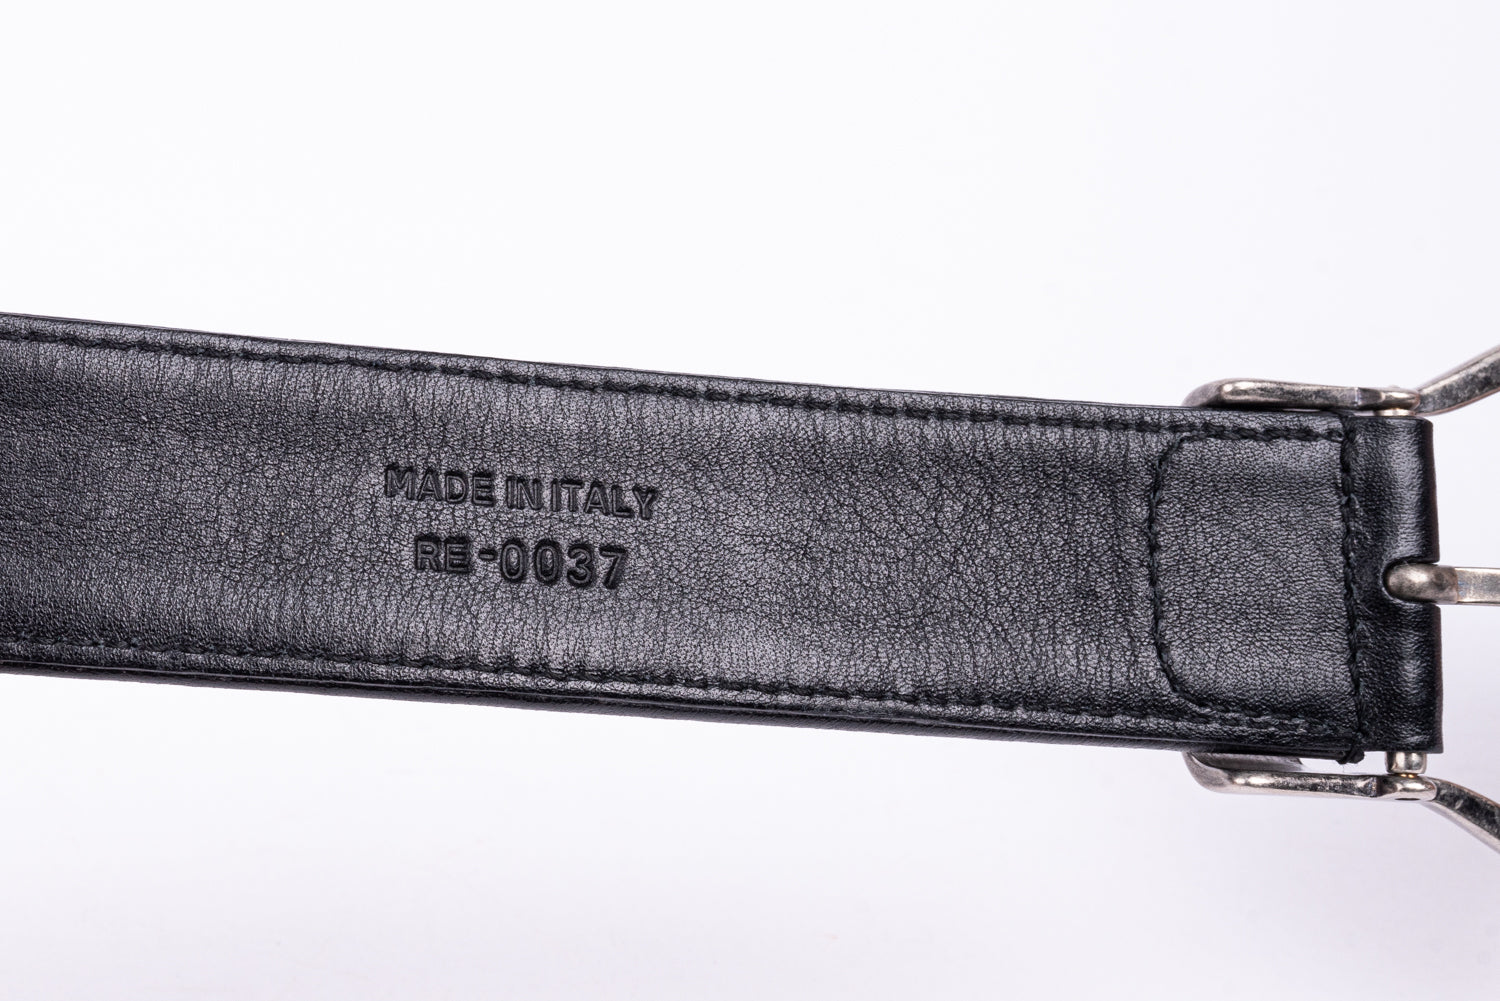 Christian Dior Vintage Monogram Black Belt